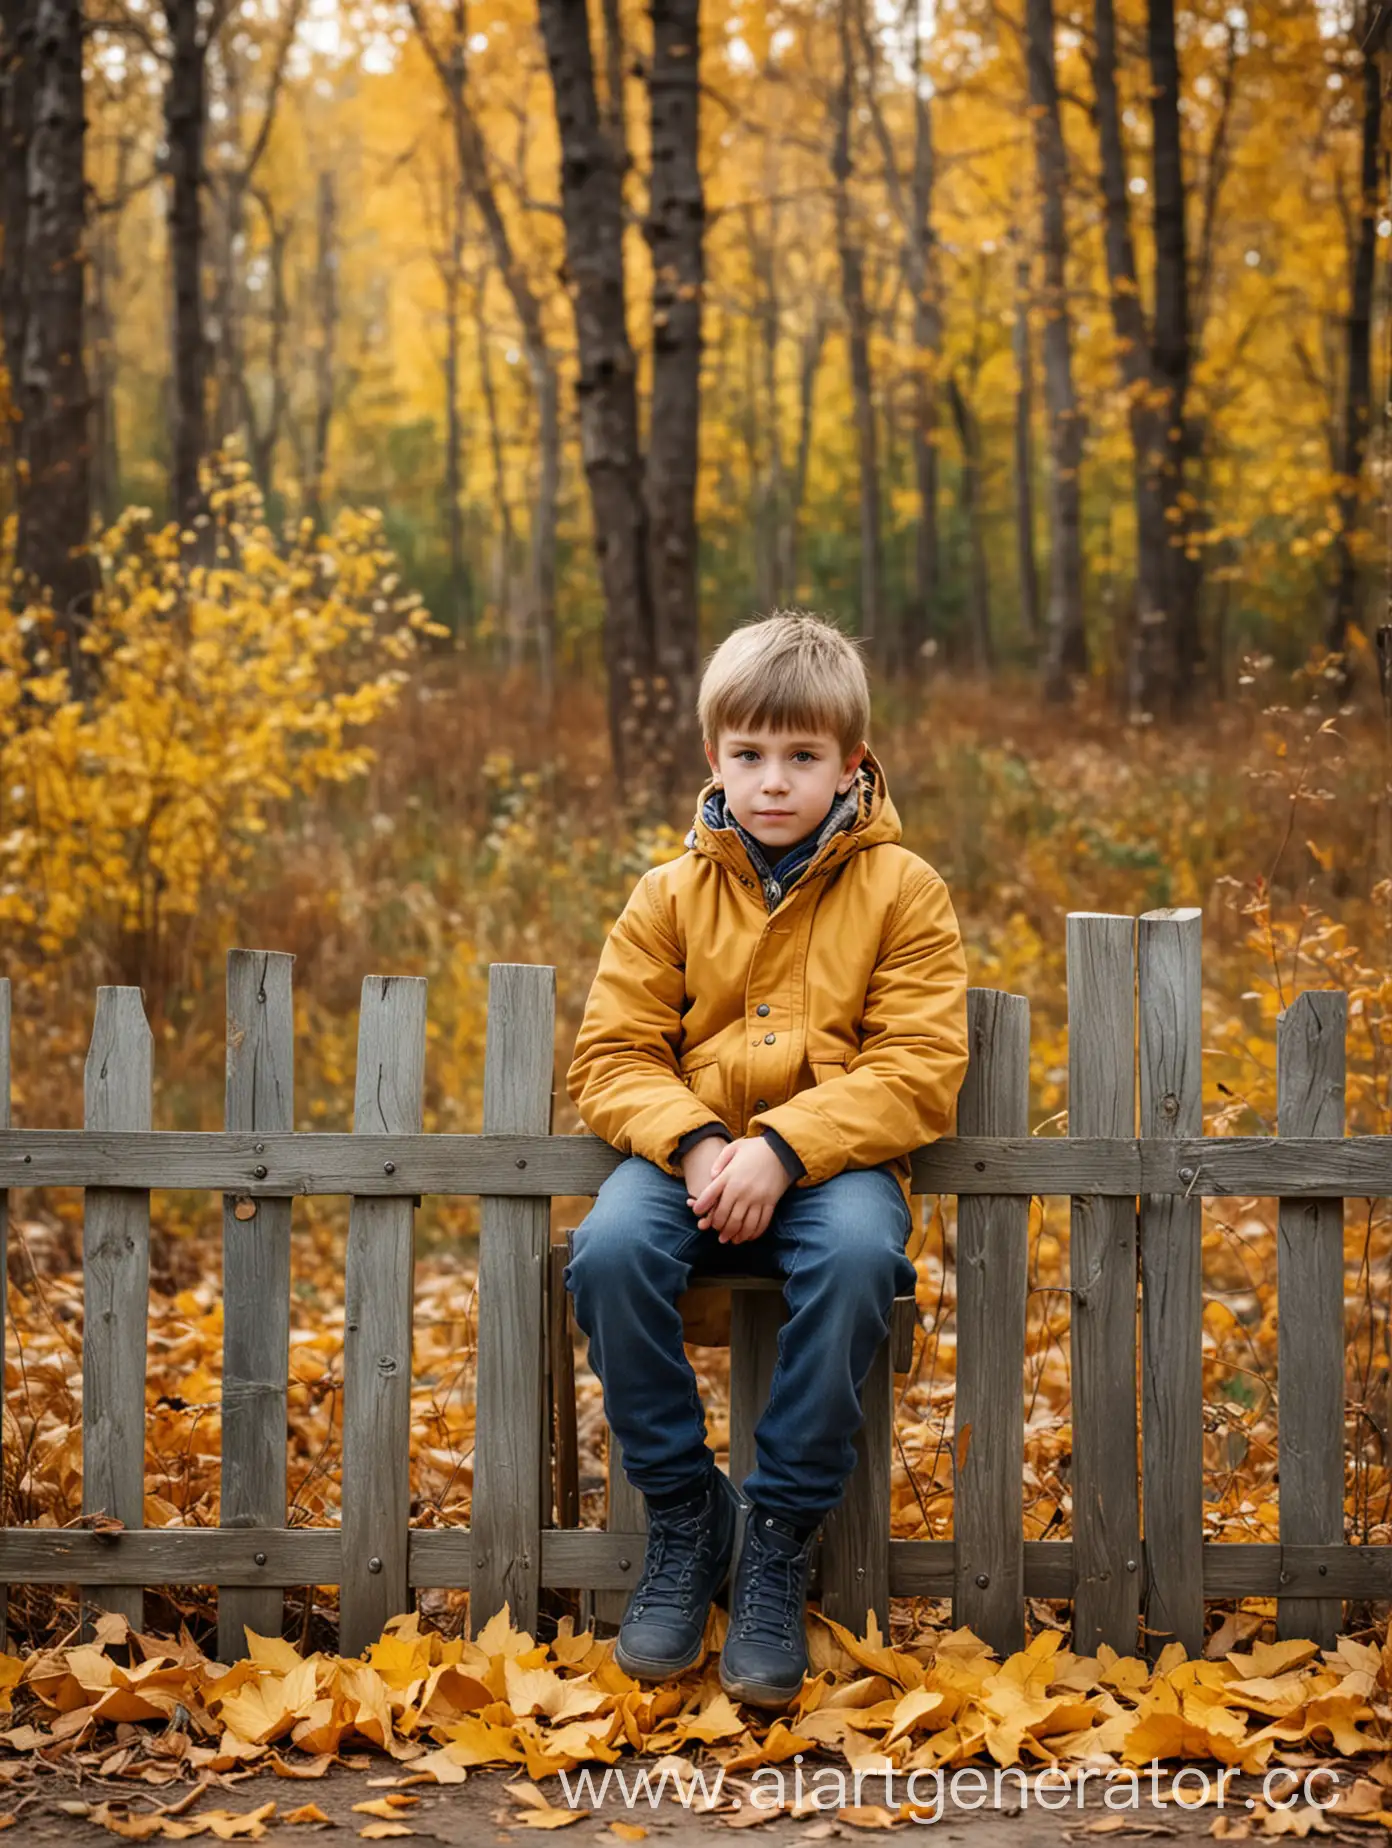 Мальчик сидит на деревянном горизонтальном  заборе, на фоне осенний лес, фон сильно размыт, по бокам осенние кусты с желтыми листьями